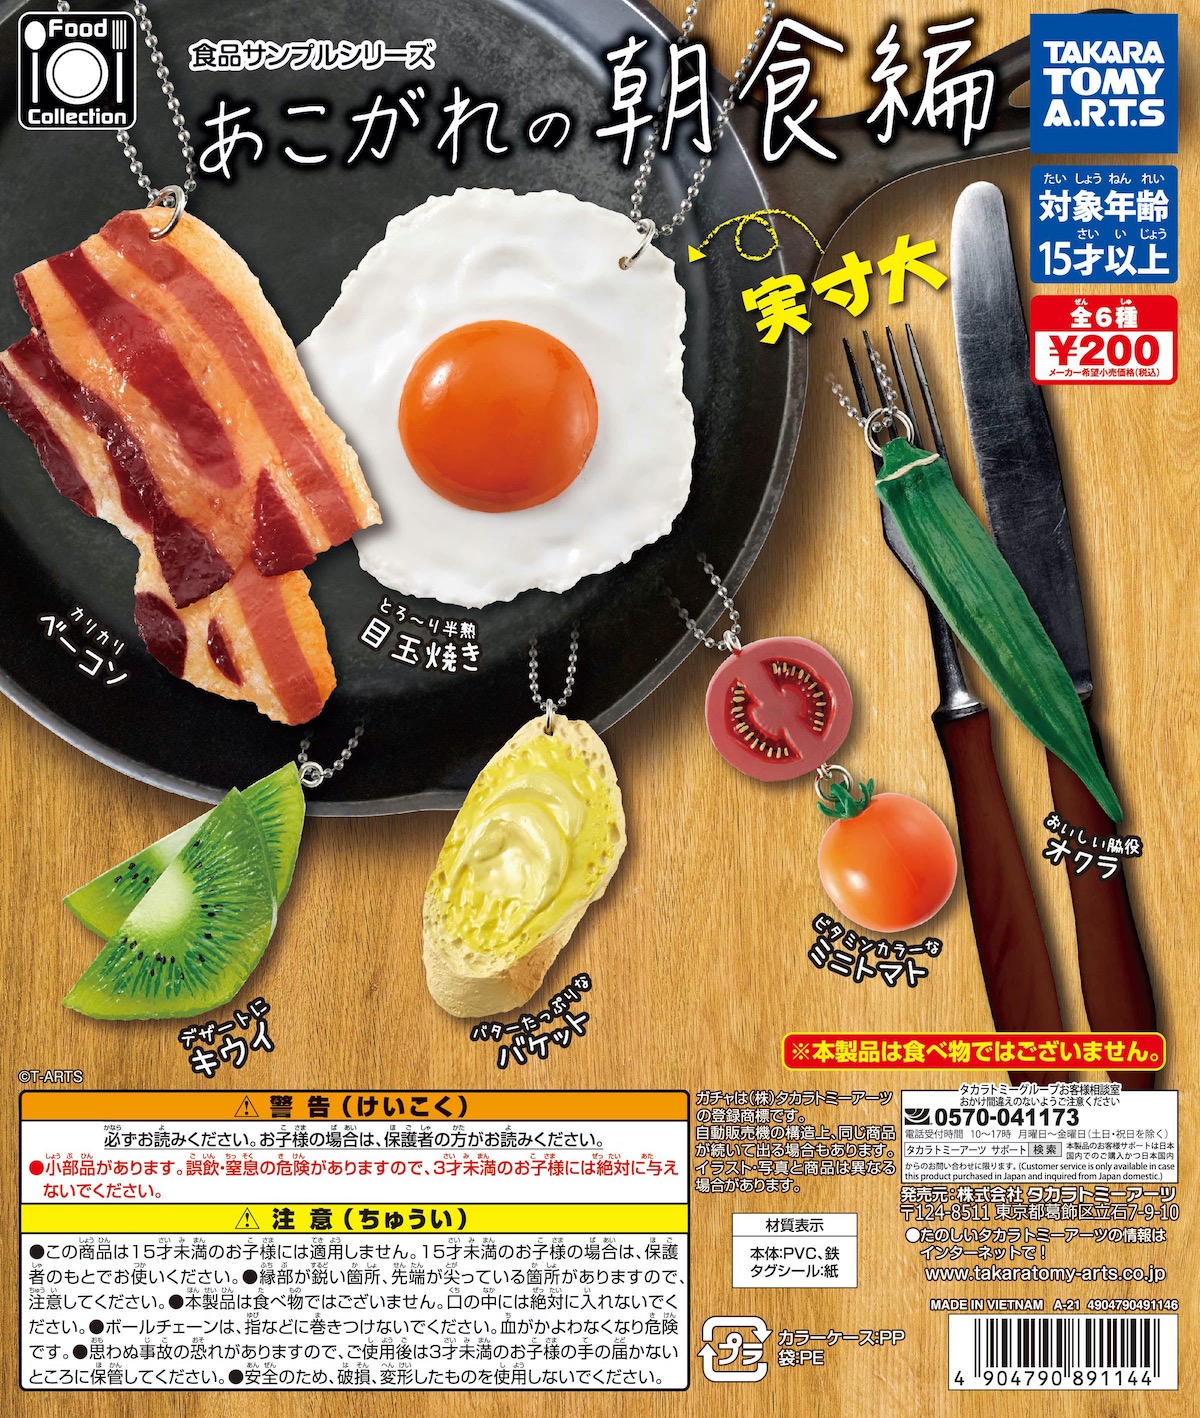 タカラトミーアーツ ガチャ「Food Collection 食品サンプルシリーズ あこがれの朝食編」